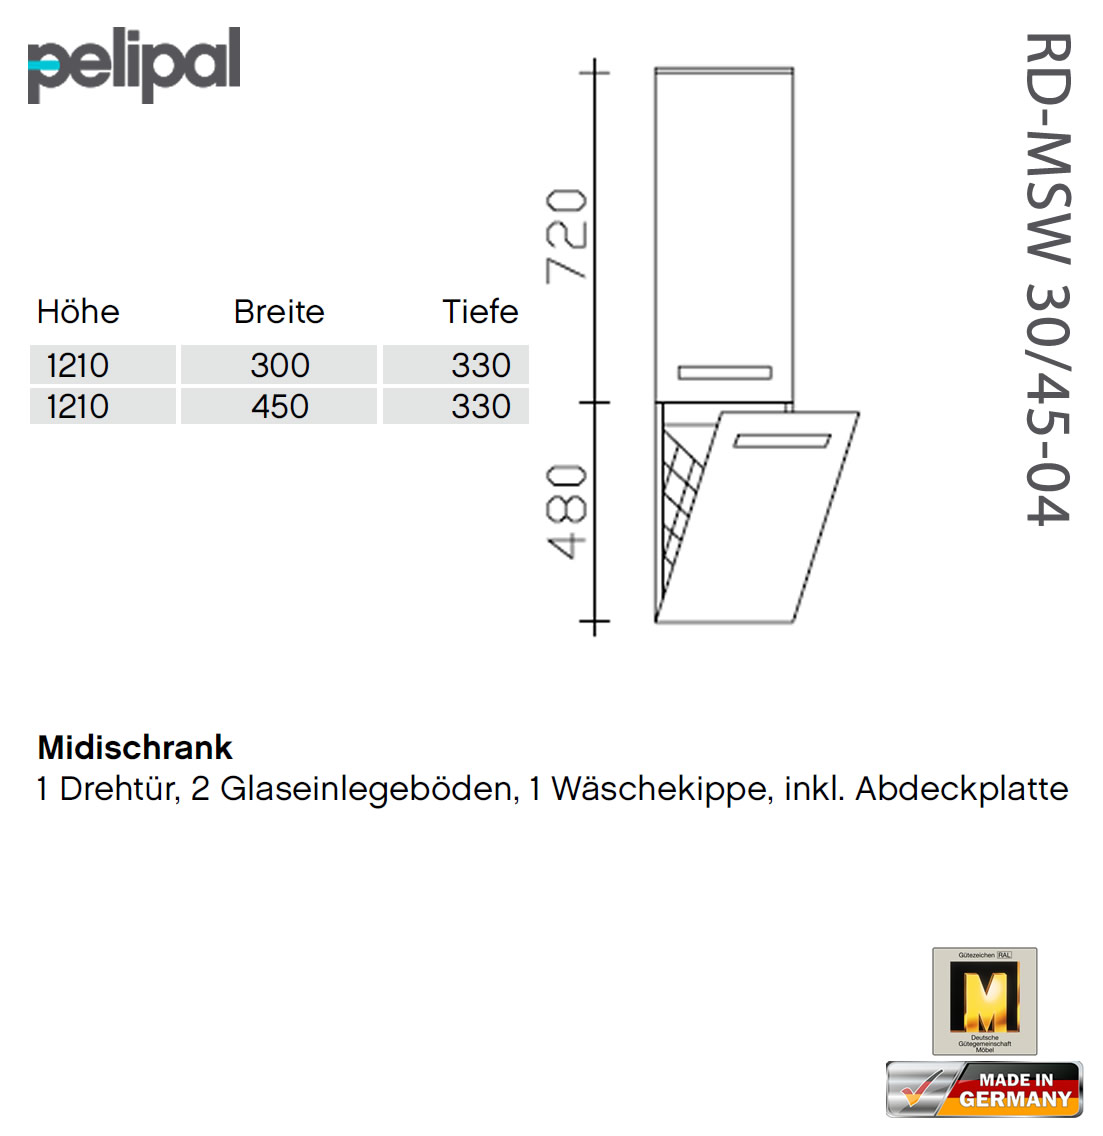 Pelipal 7005 Midischrank 121 cm - RD-MSW 30-04 und RD-MSW 45-04 | Stahlschränke